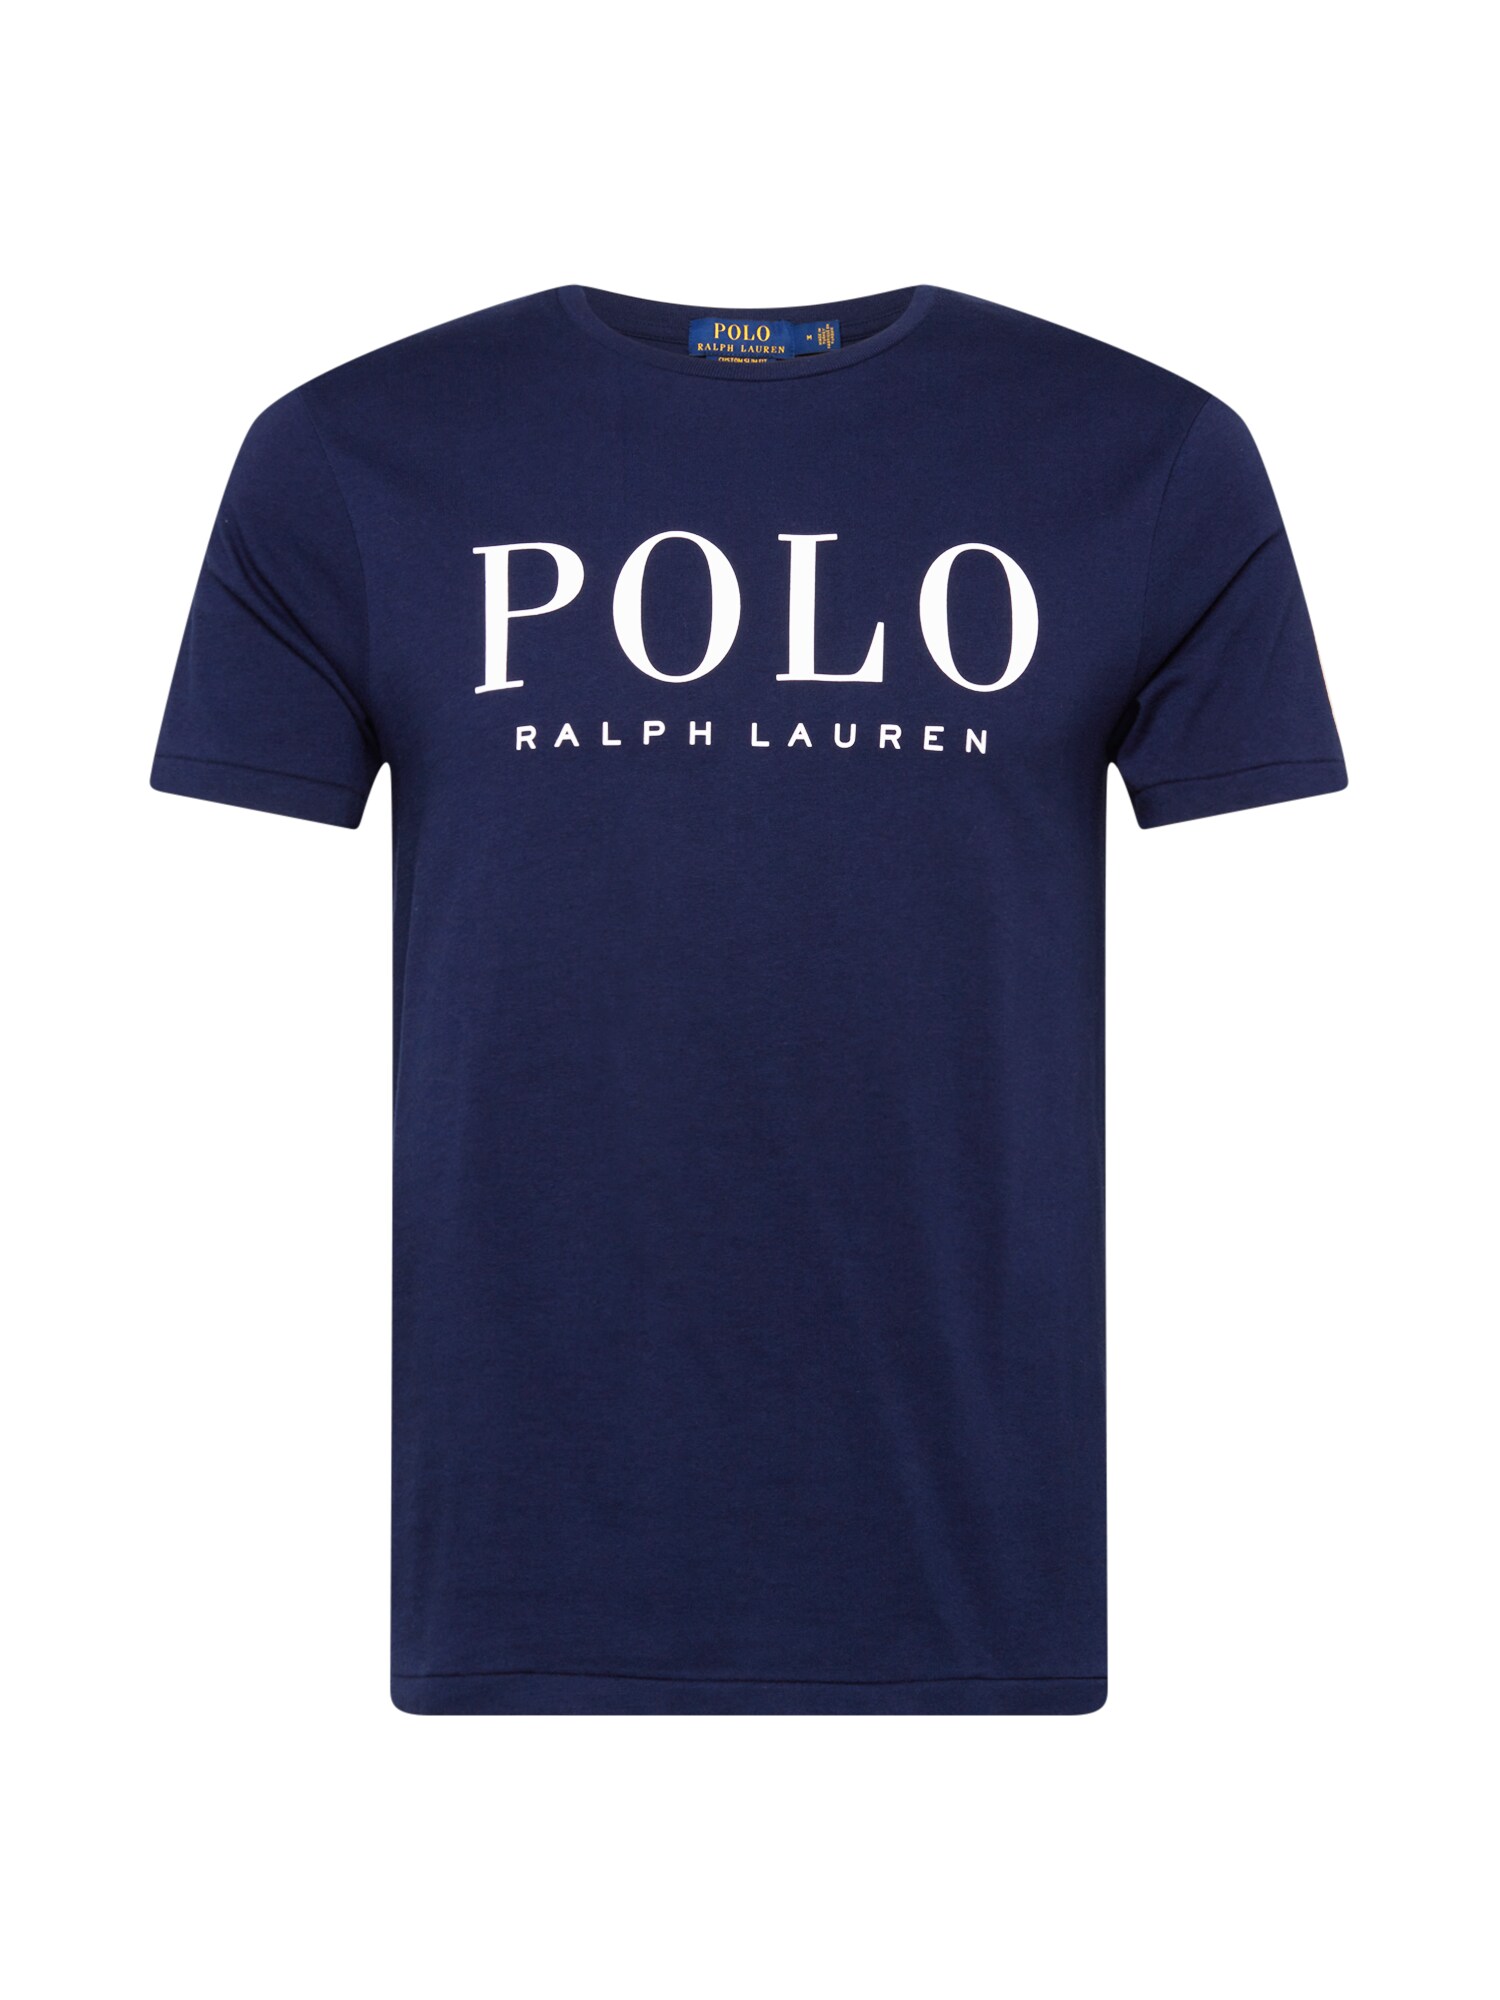 Polo Ralph Lauren Polo Ralph Lauren T-Shirt navy / weiß